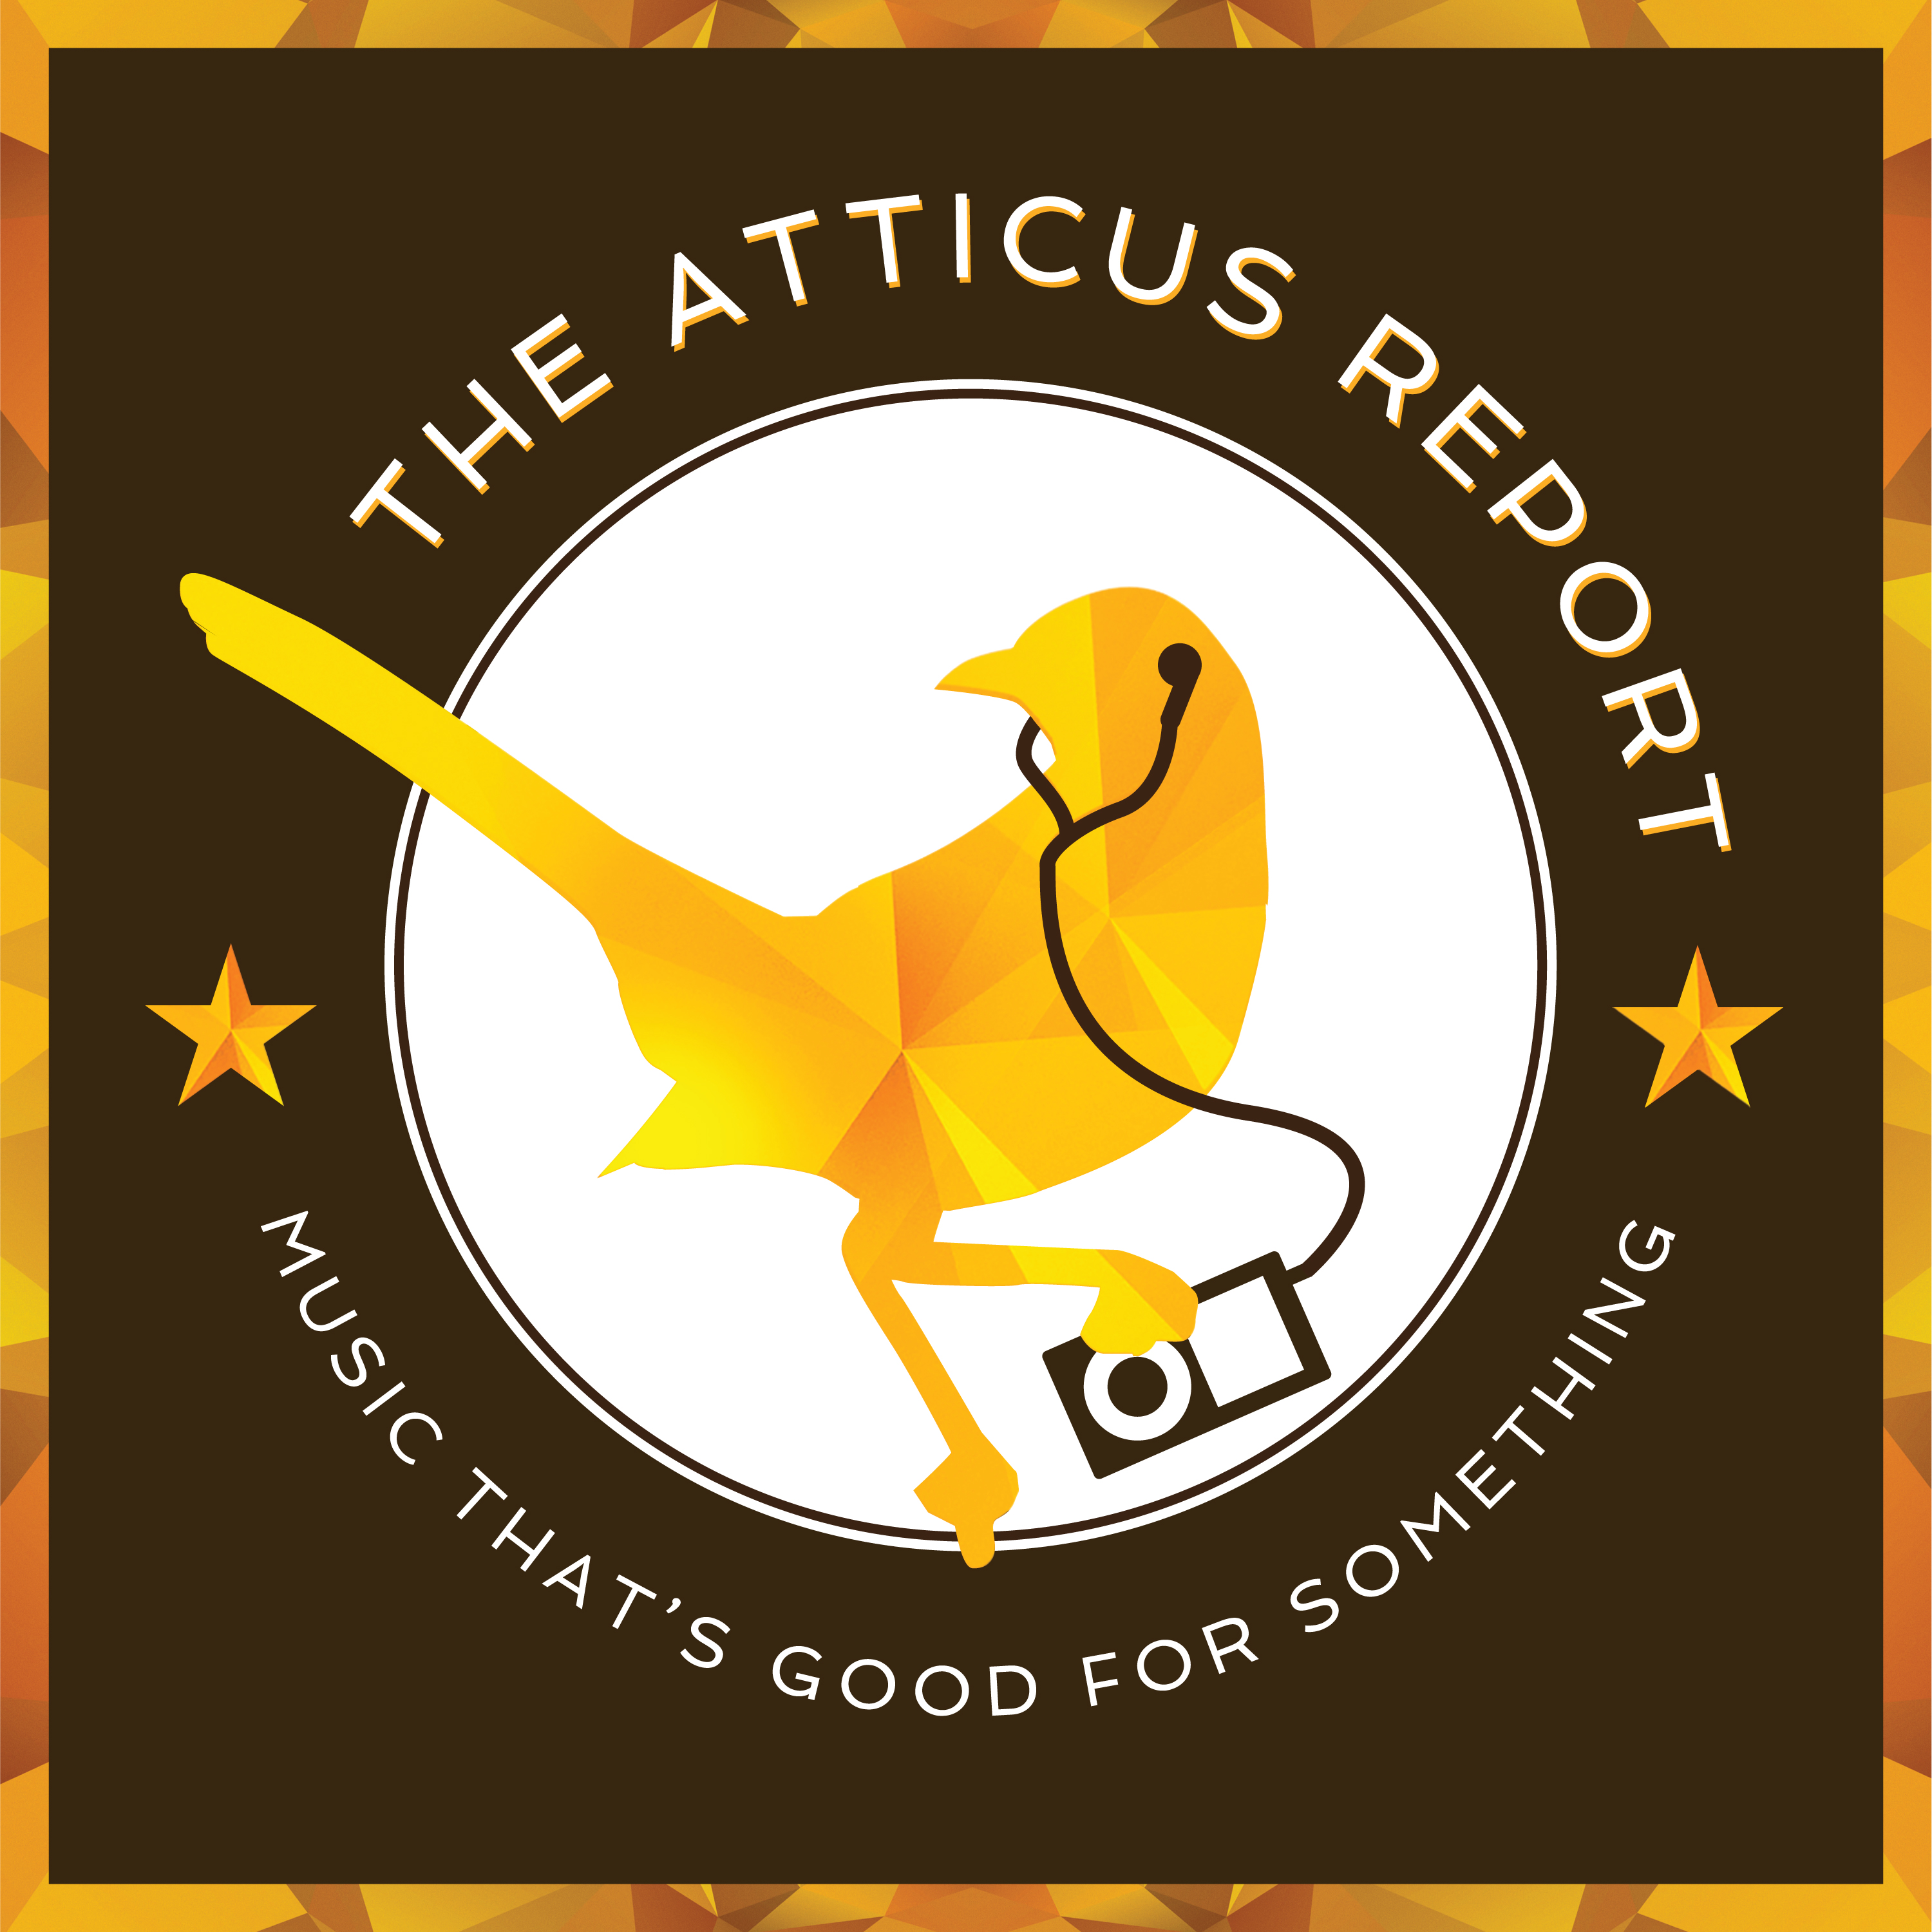 The Atticus Report